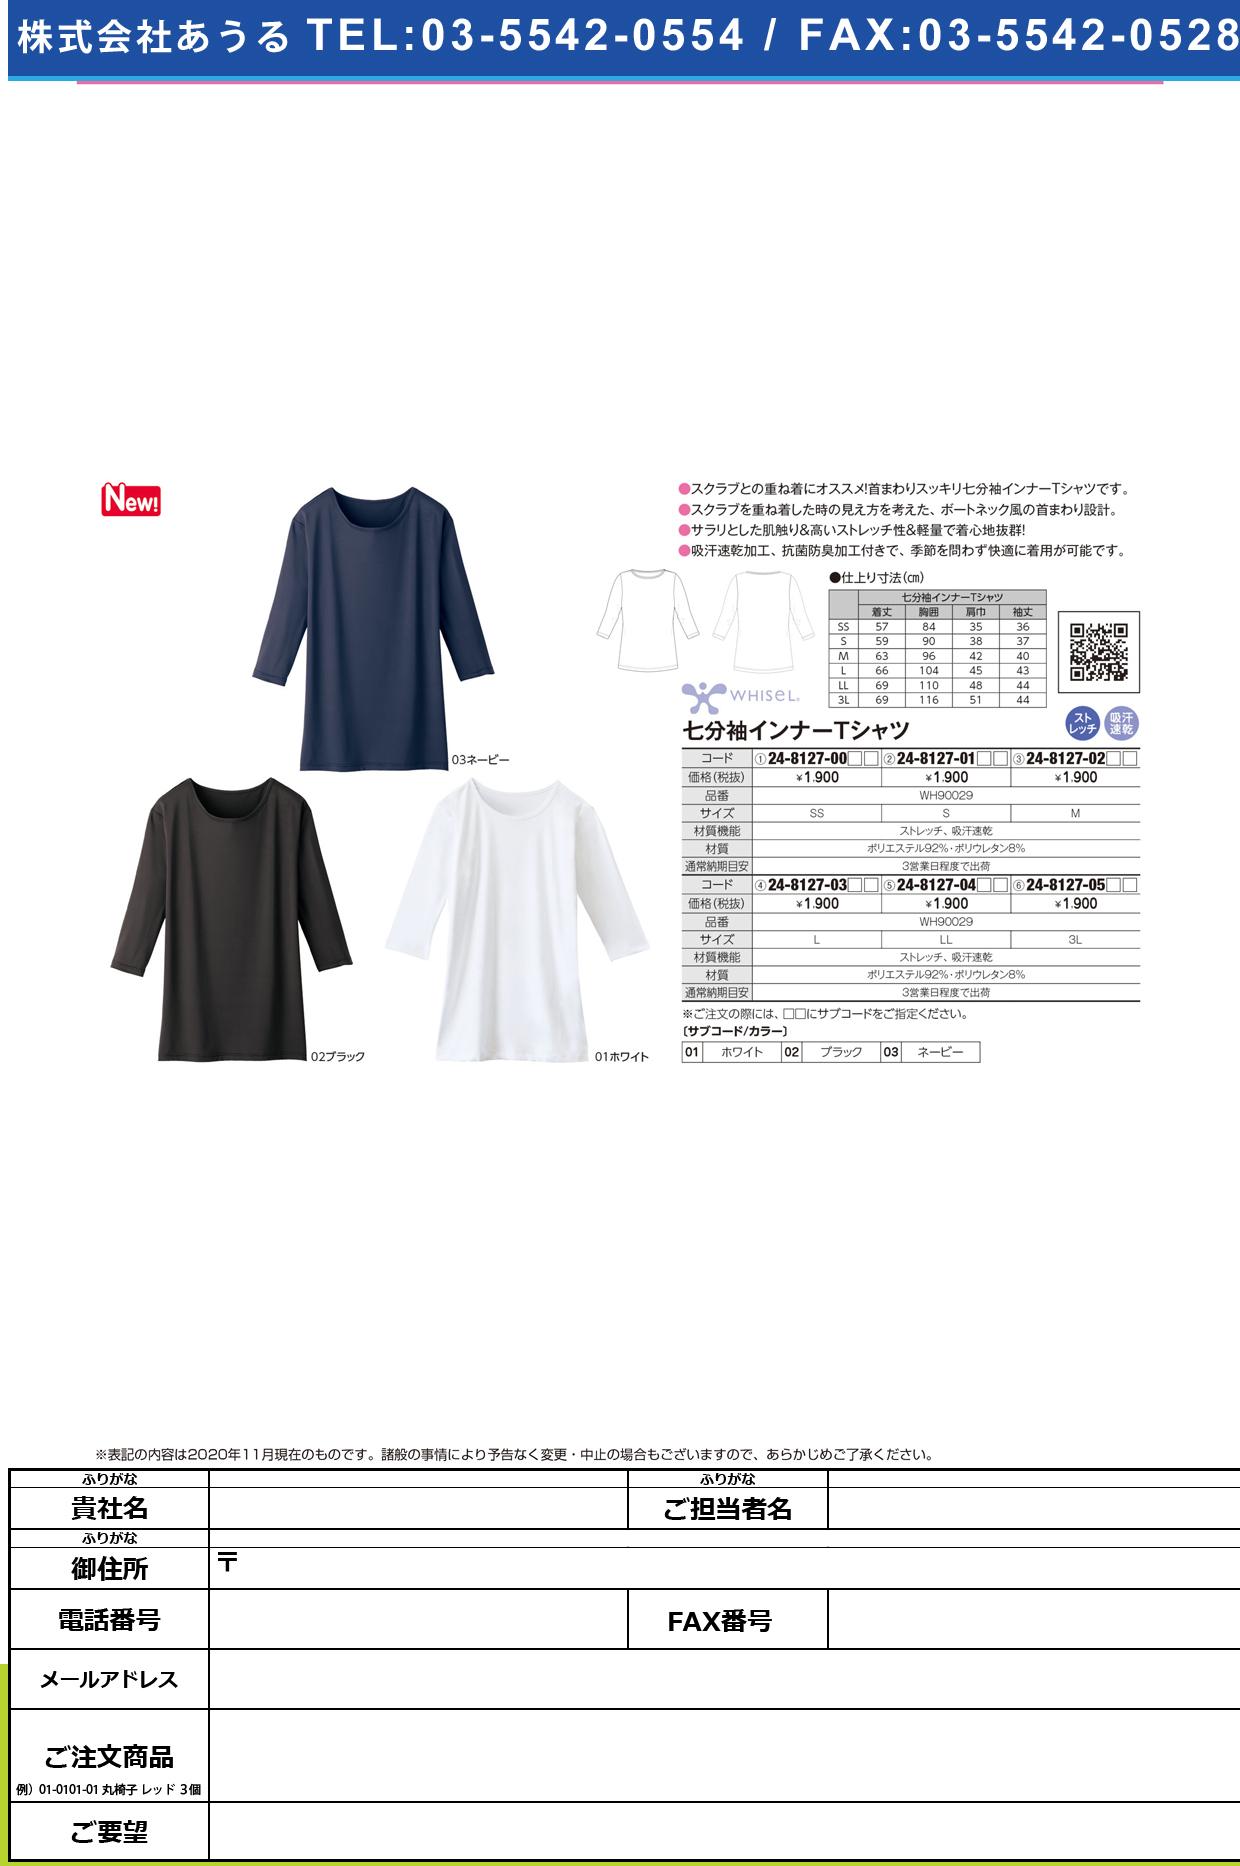 七分袖インナーTシャツ WH90029(L)WH90029(L)ネービー(24-8127-03-03)【自重堂】(販売単位:1)